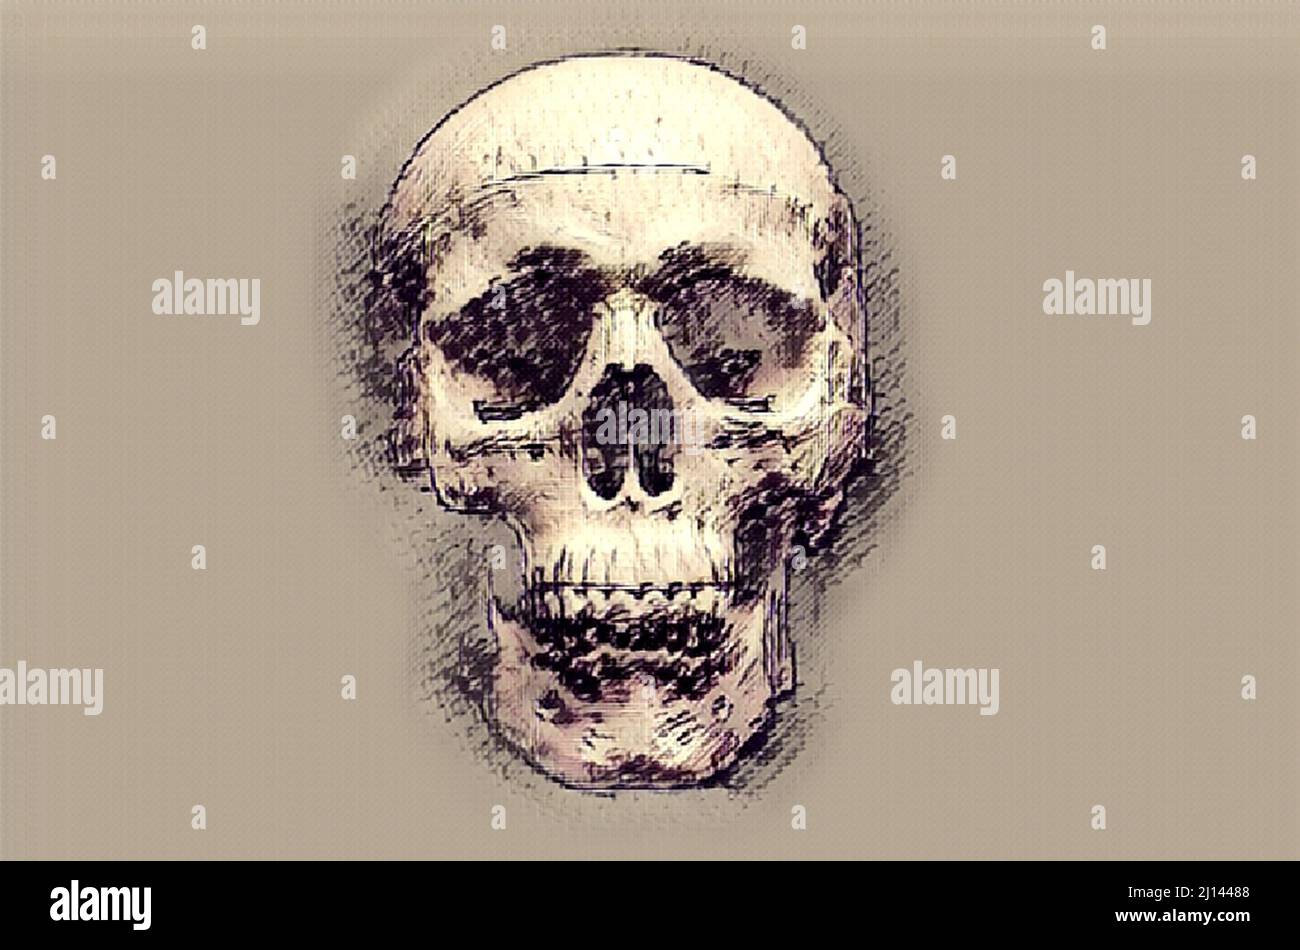 Crâne humain en plastique, rendu dans un style artistique, esquisse de mise en plan Banque D'Images